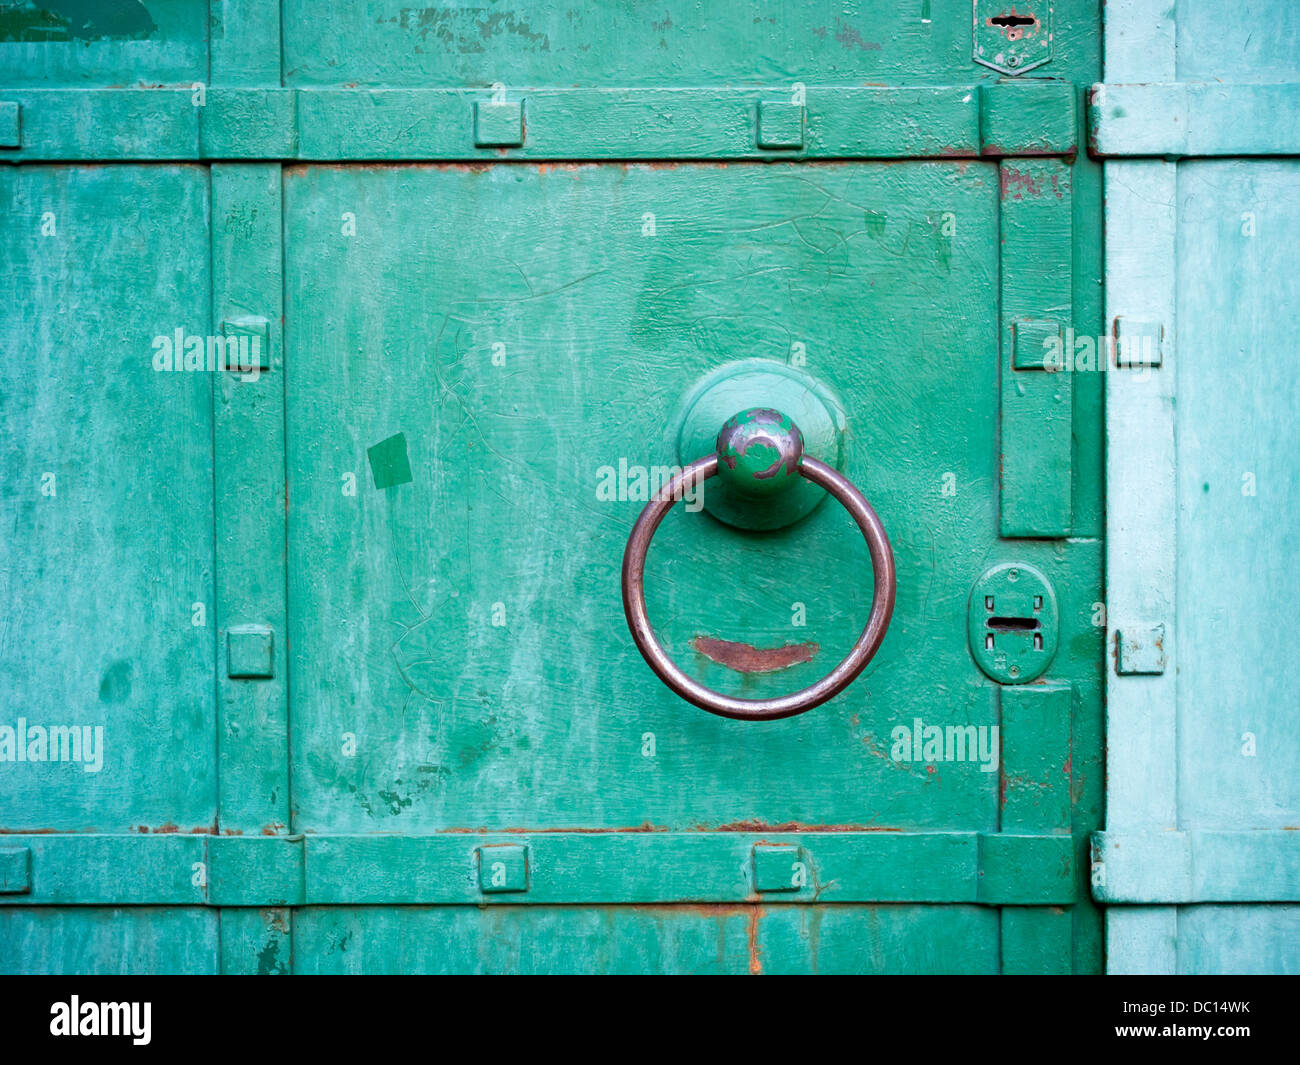 metallic ring handle over green door Stock Photo